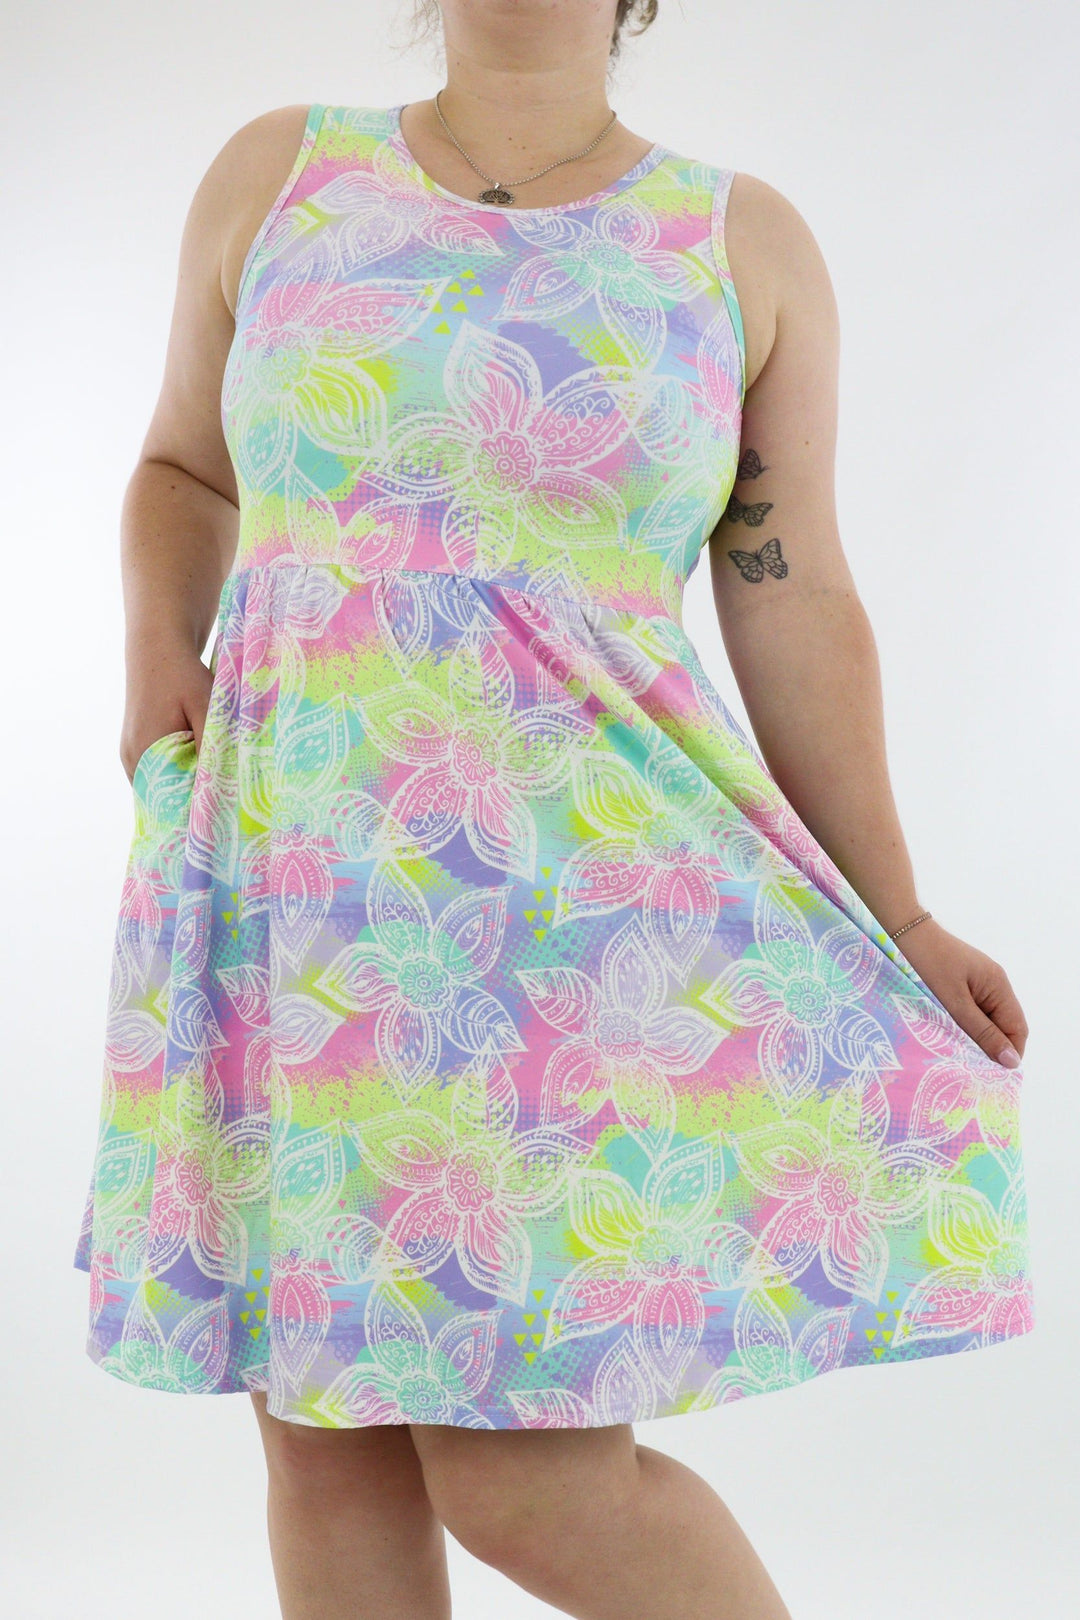 Freedom Flower - Sleeveless Skater Dress - Knee Length - Side Pockets - Pawlie